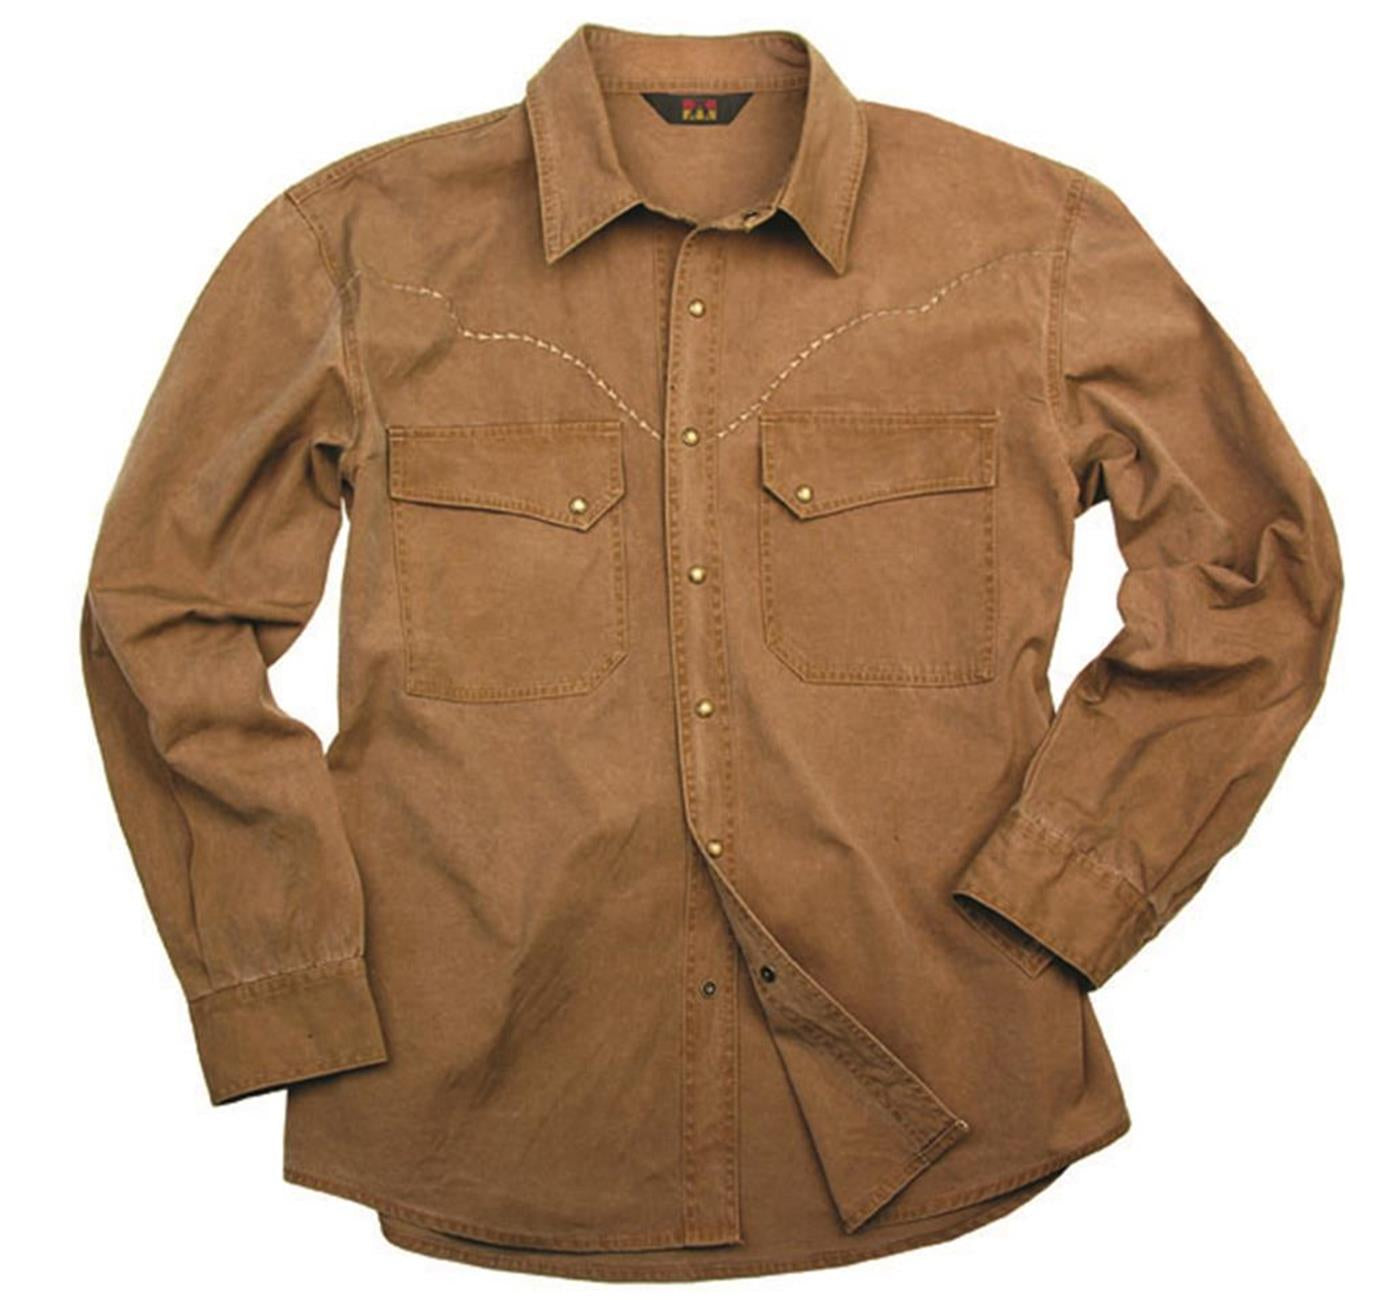 Herrenhemd aus leichter Baumwolle mit gestickter Westernkante in mustard & tobacco